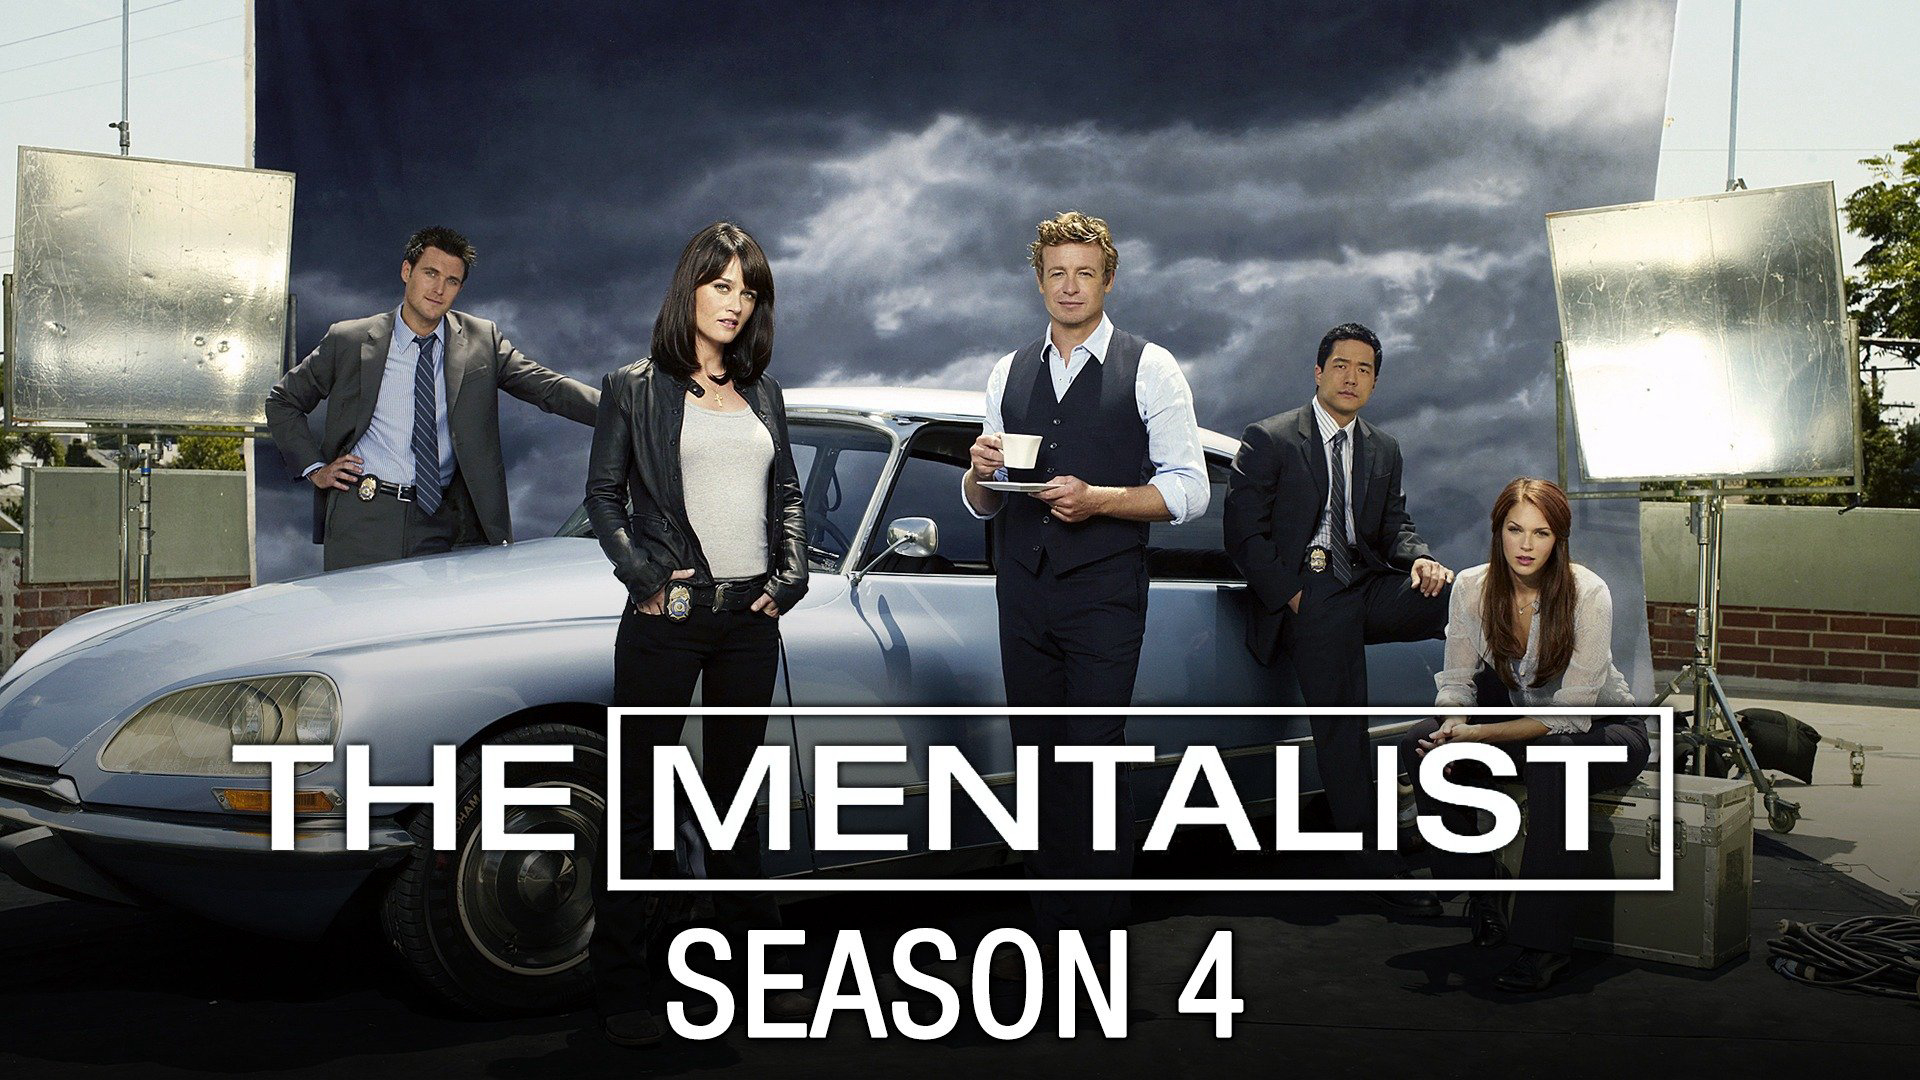 The Mentalist (Season 4) / The Mentalist (Season 4) (2012)